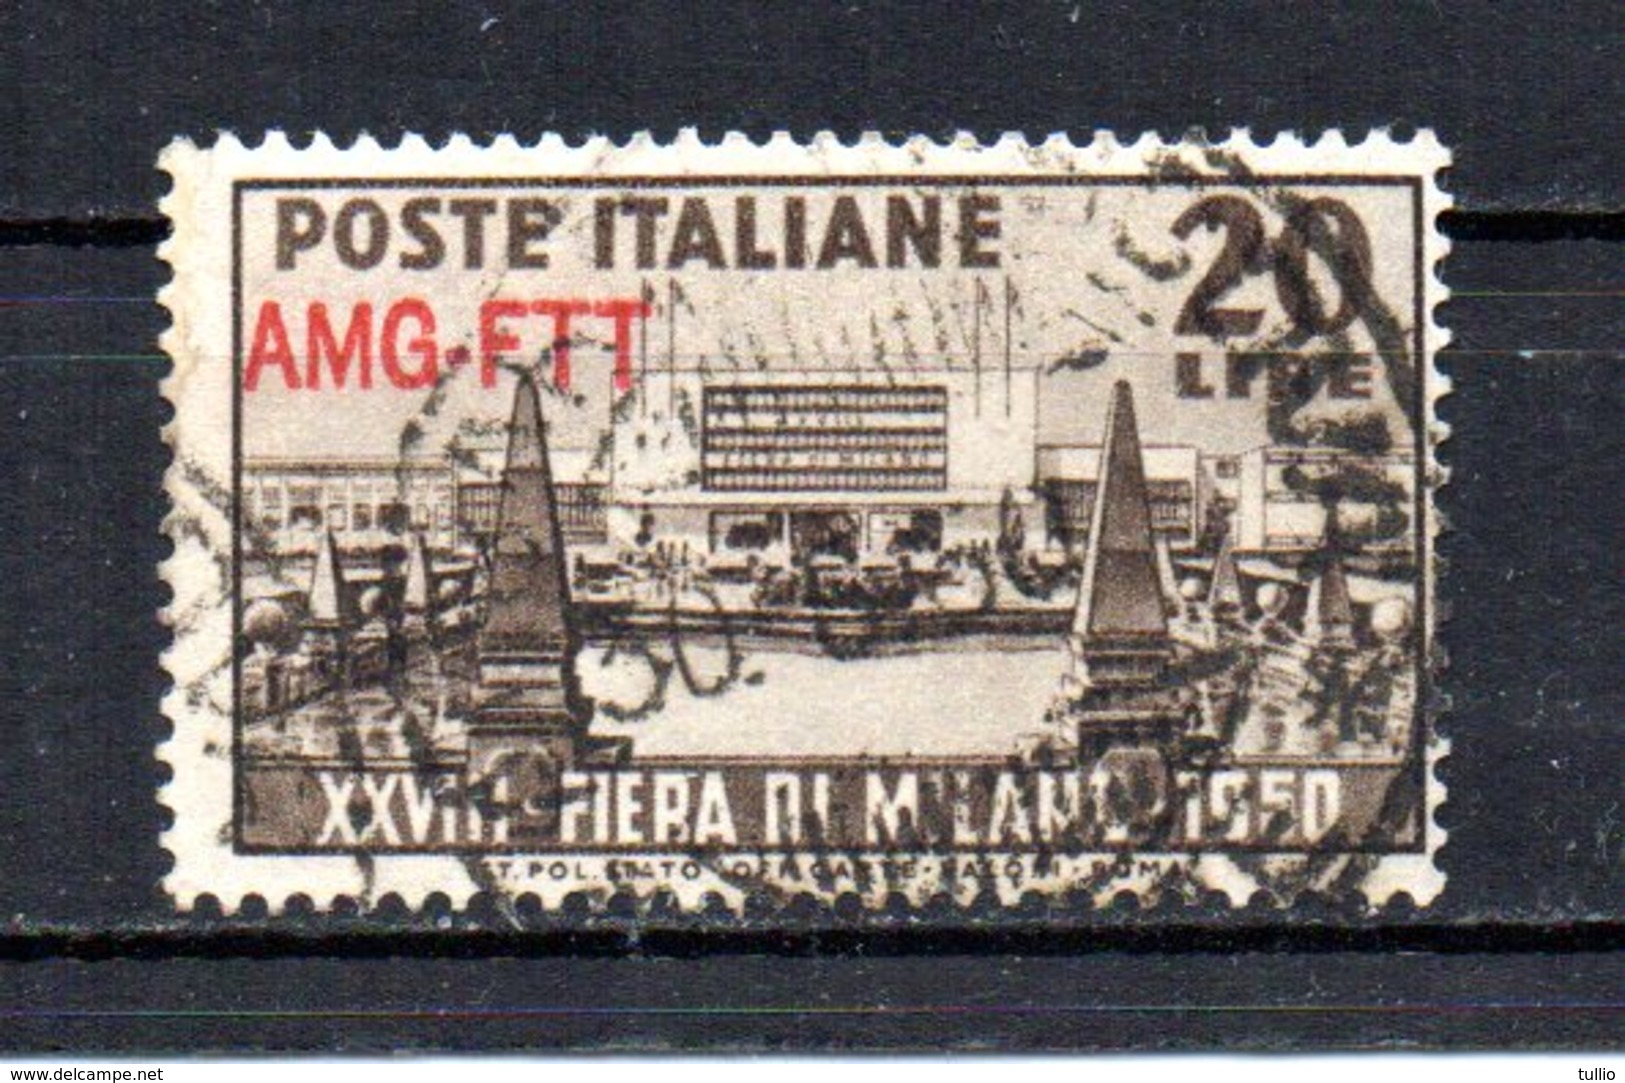 ITALIA TRIESTE 1949 CANCELLED - Gebraucht